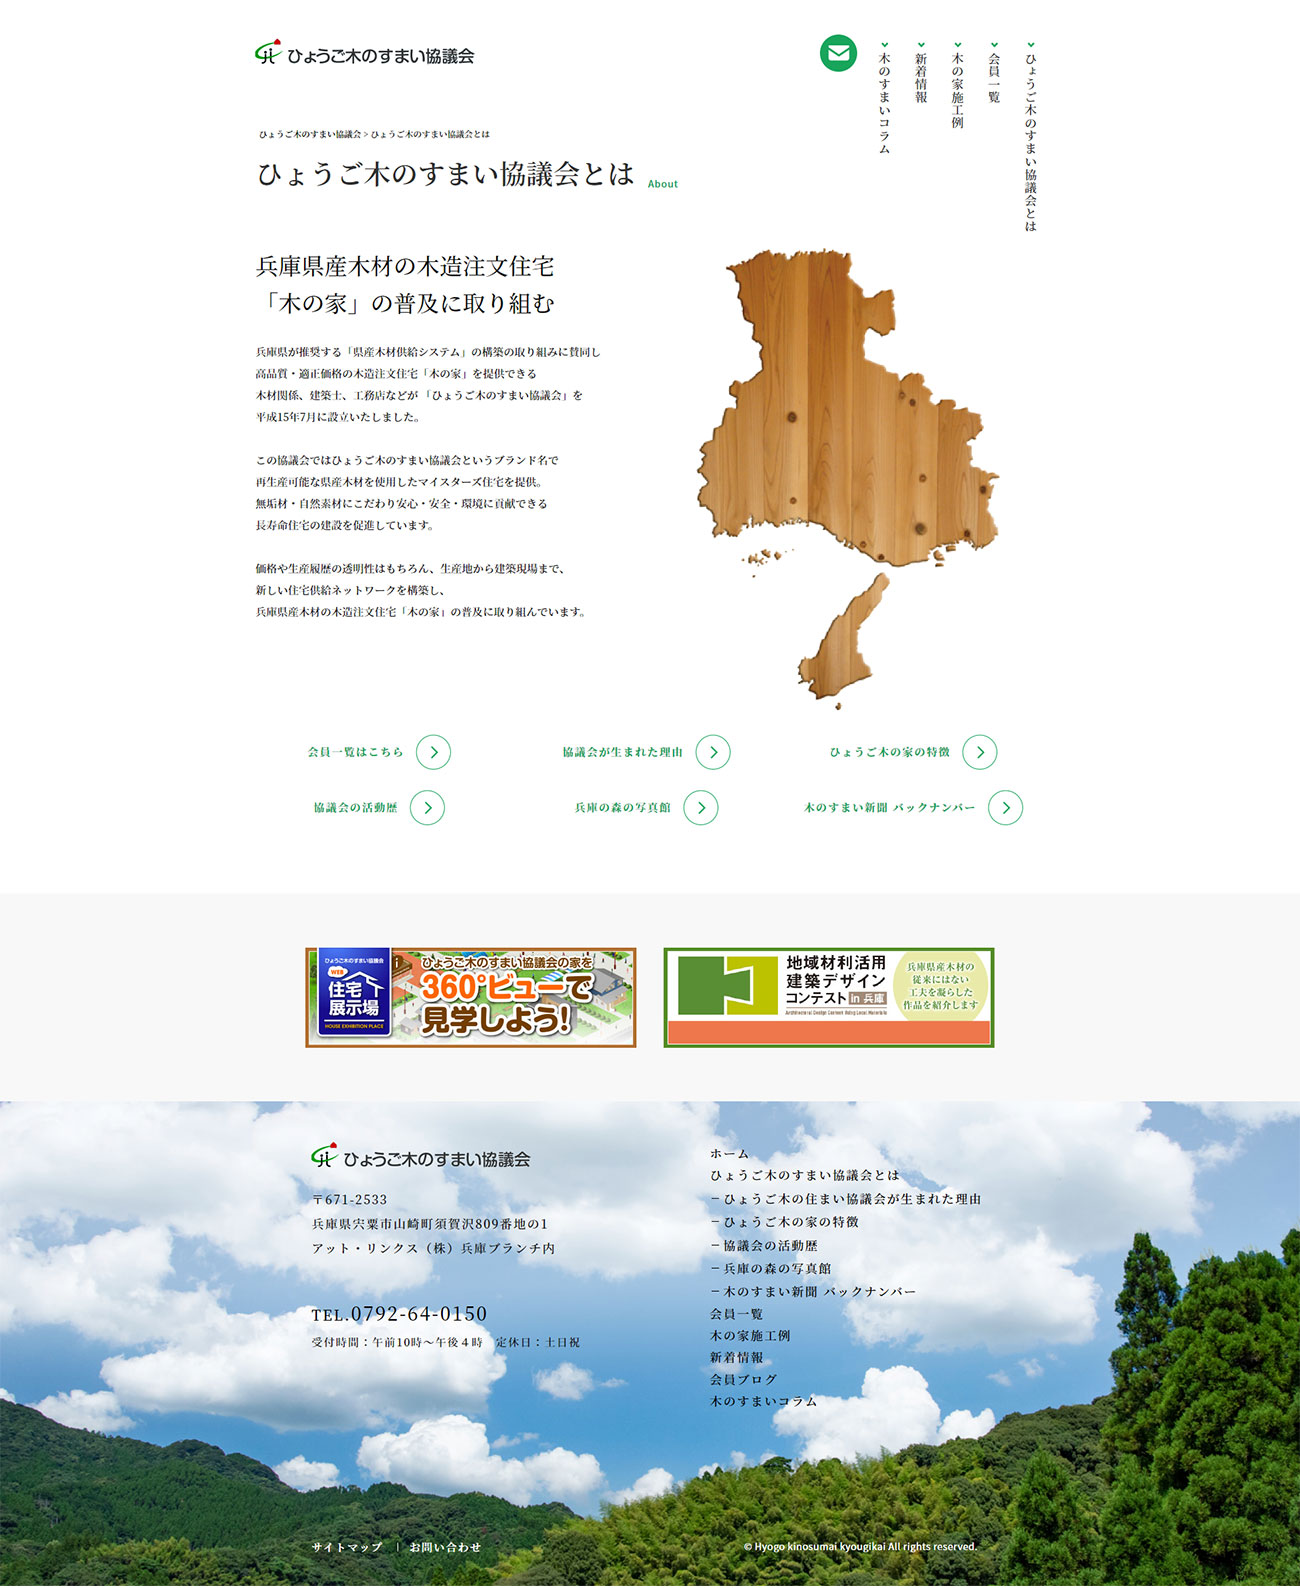 宍粟市 ひょうご木のすまい協議会 ホームページ制作2